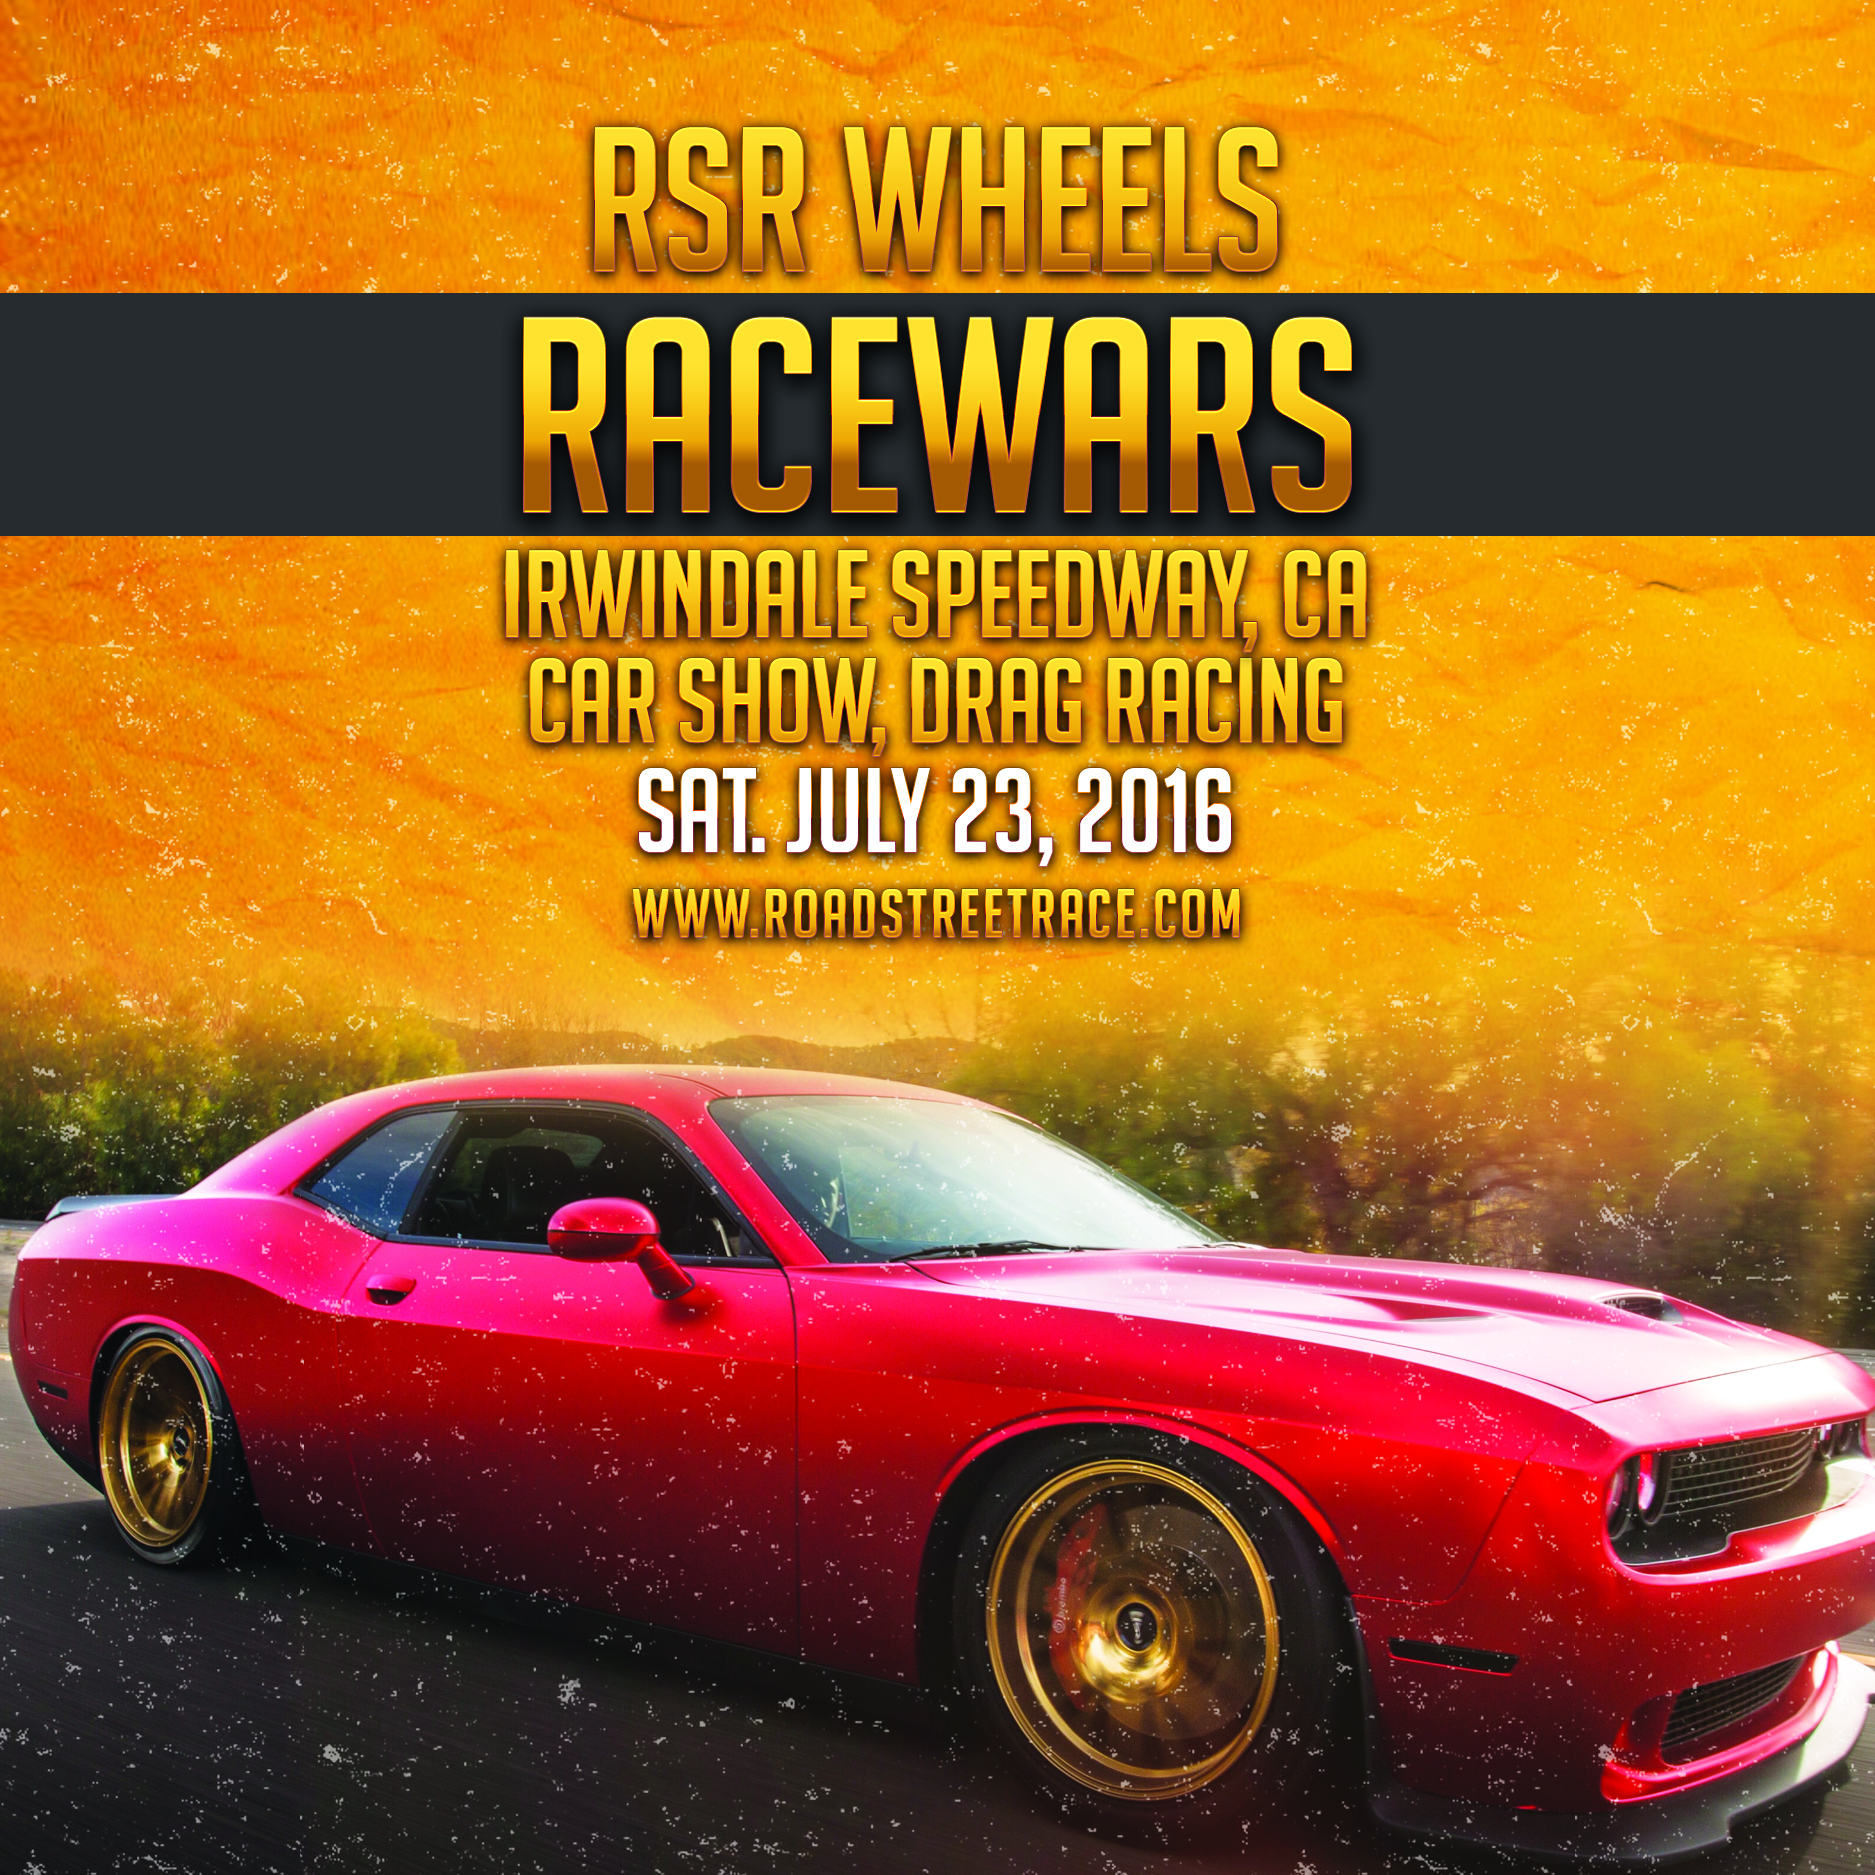 RSR Race Wars